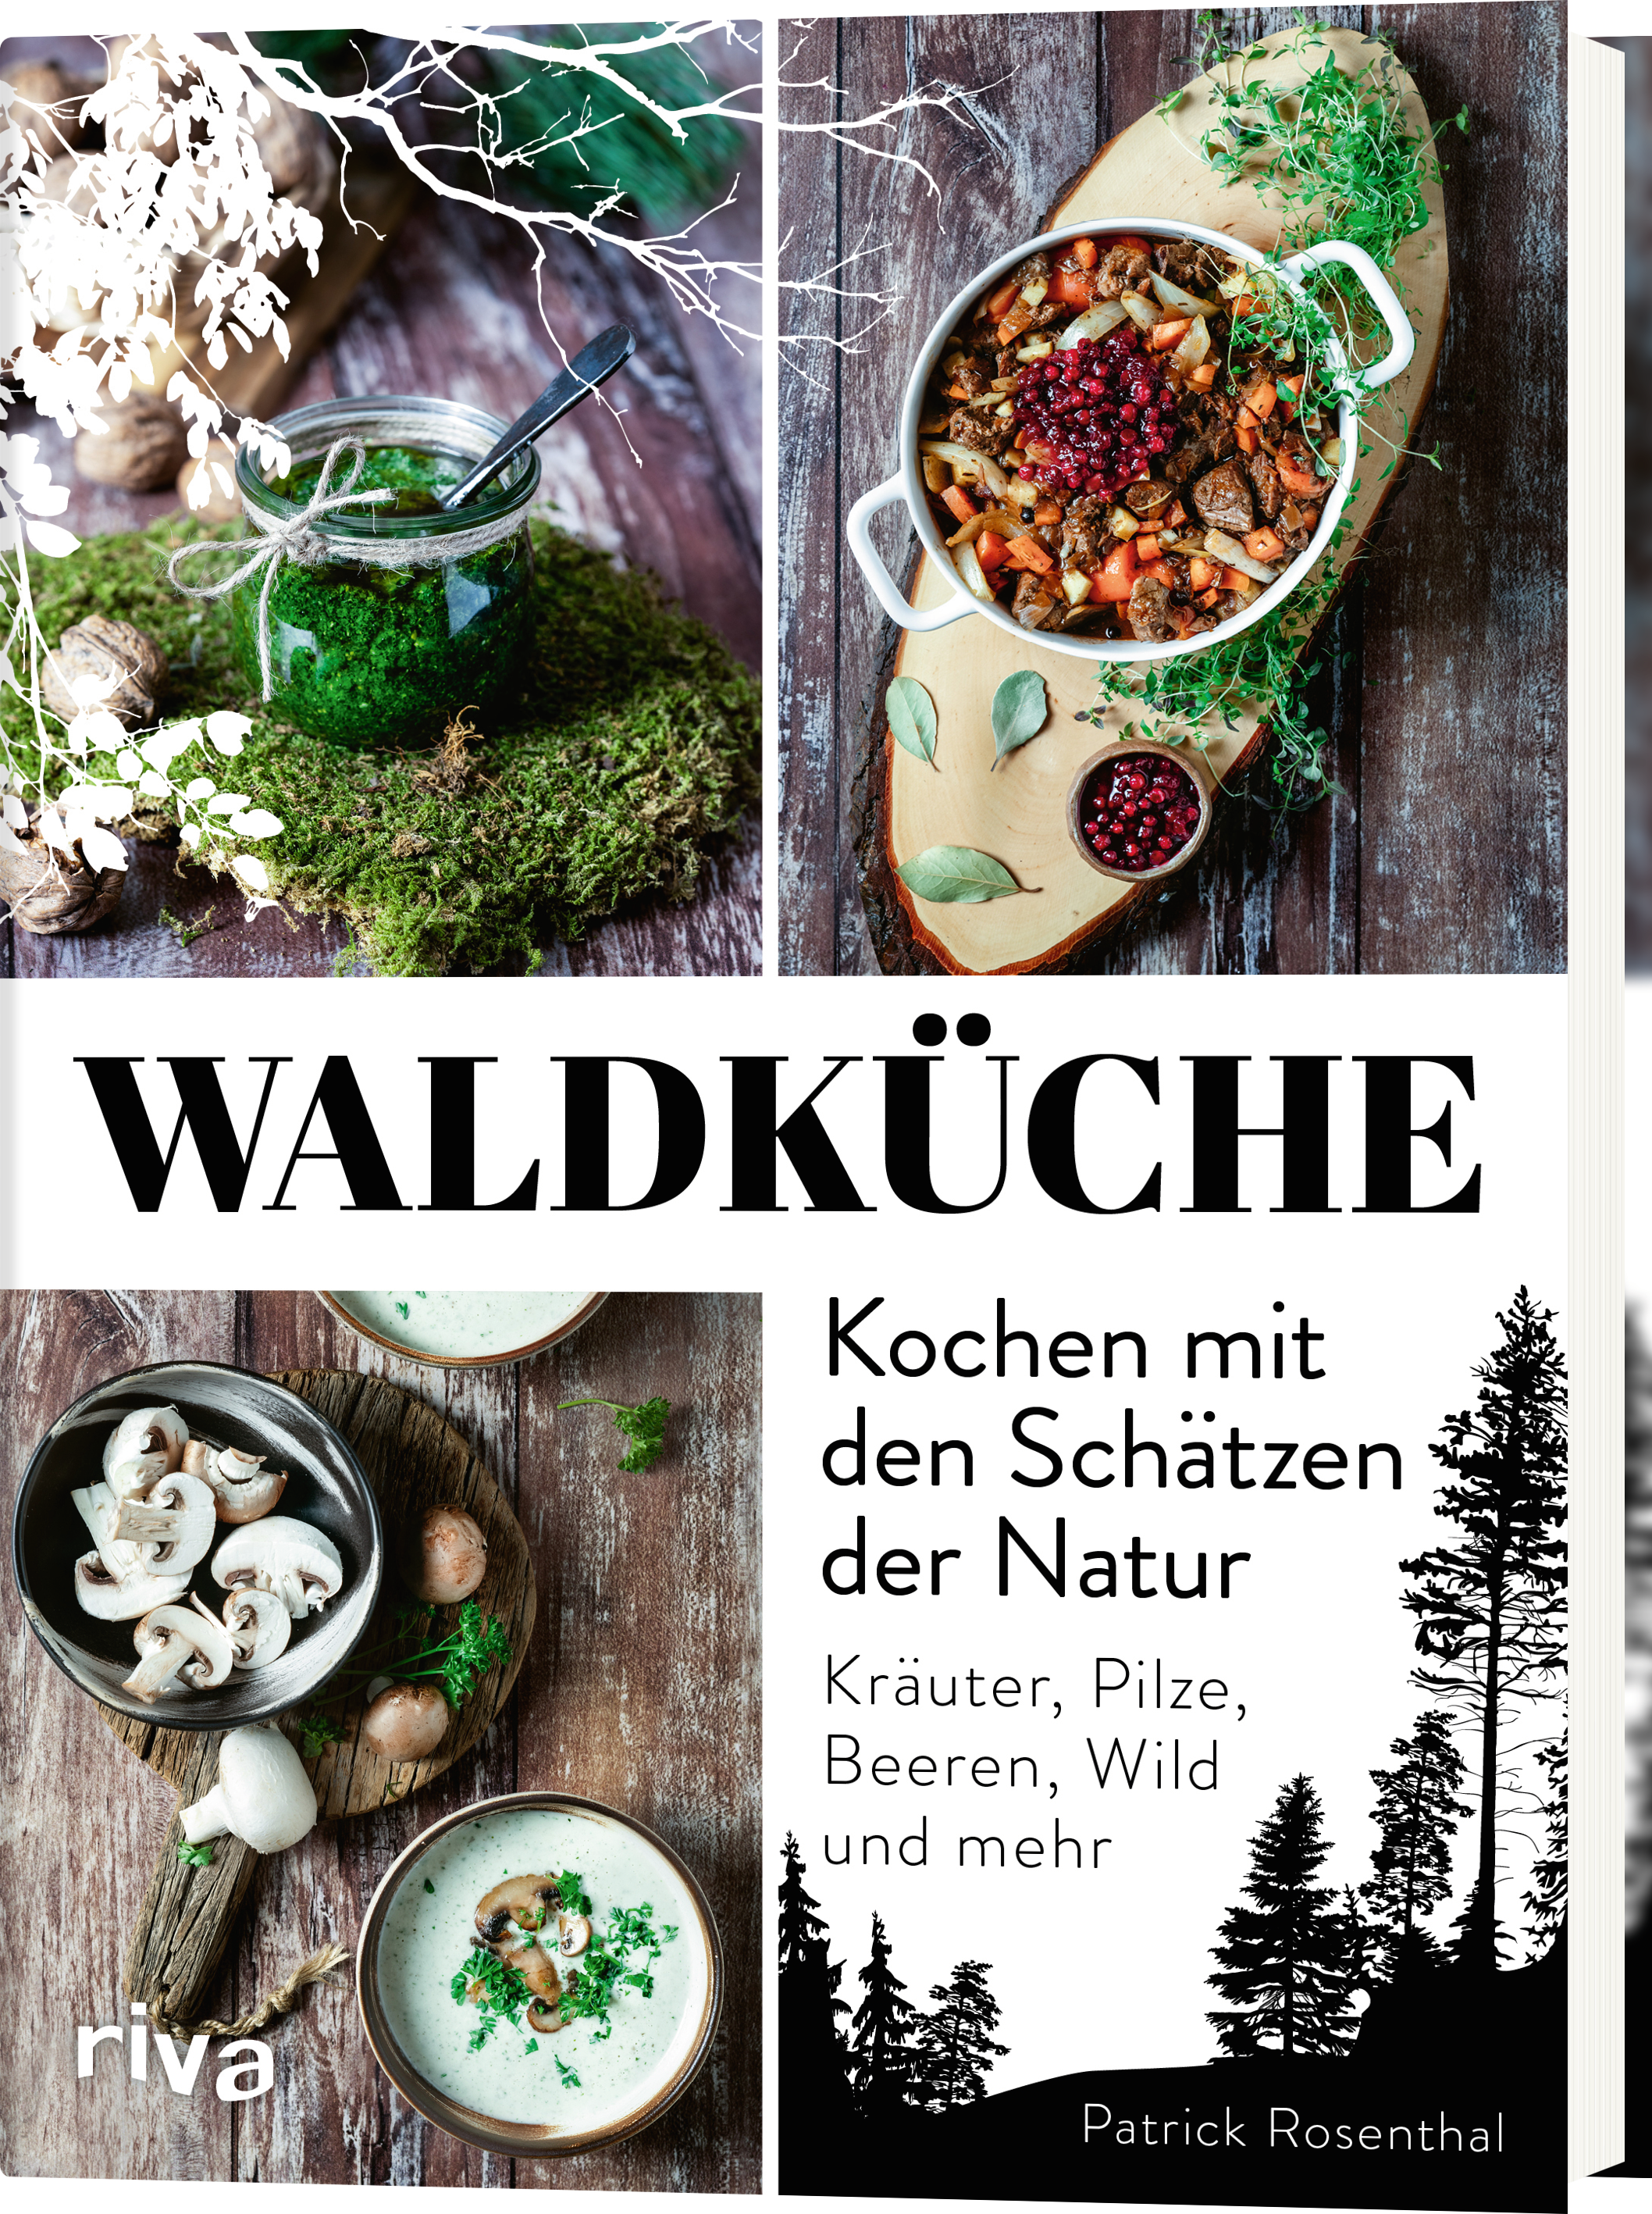 Waldküche: Kochen mit den Schätzen der Natur